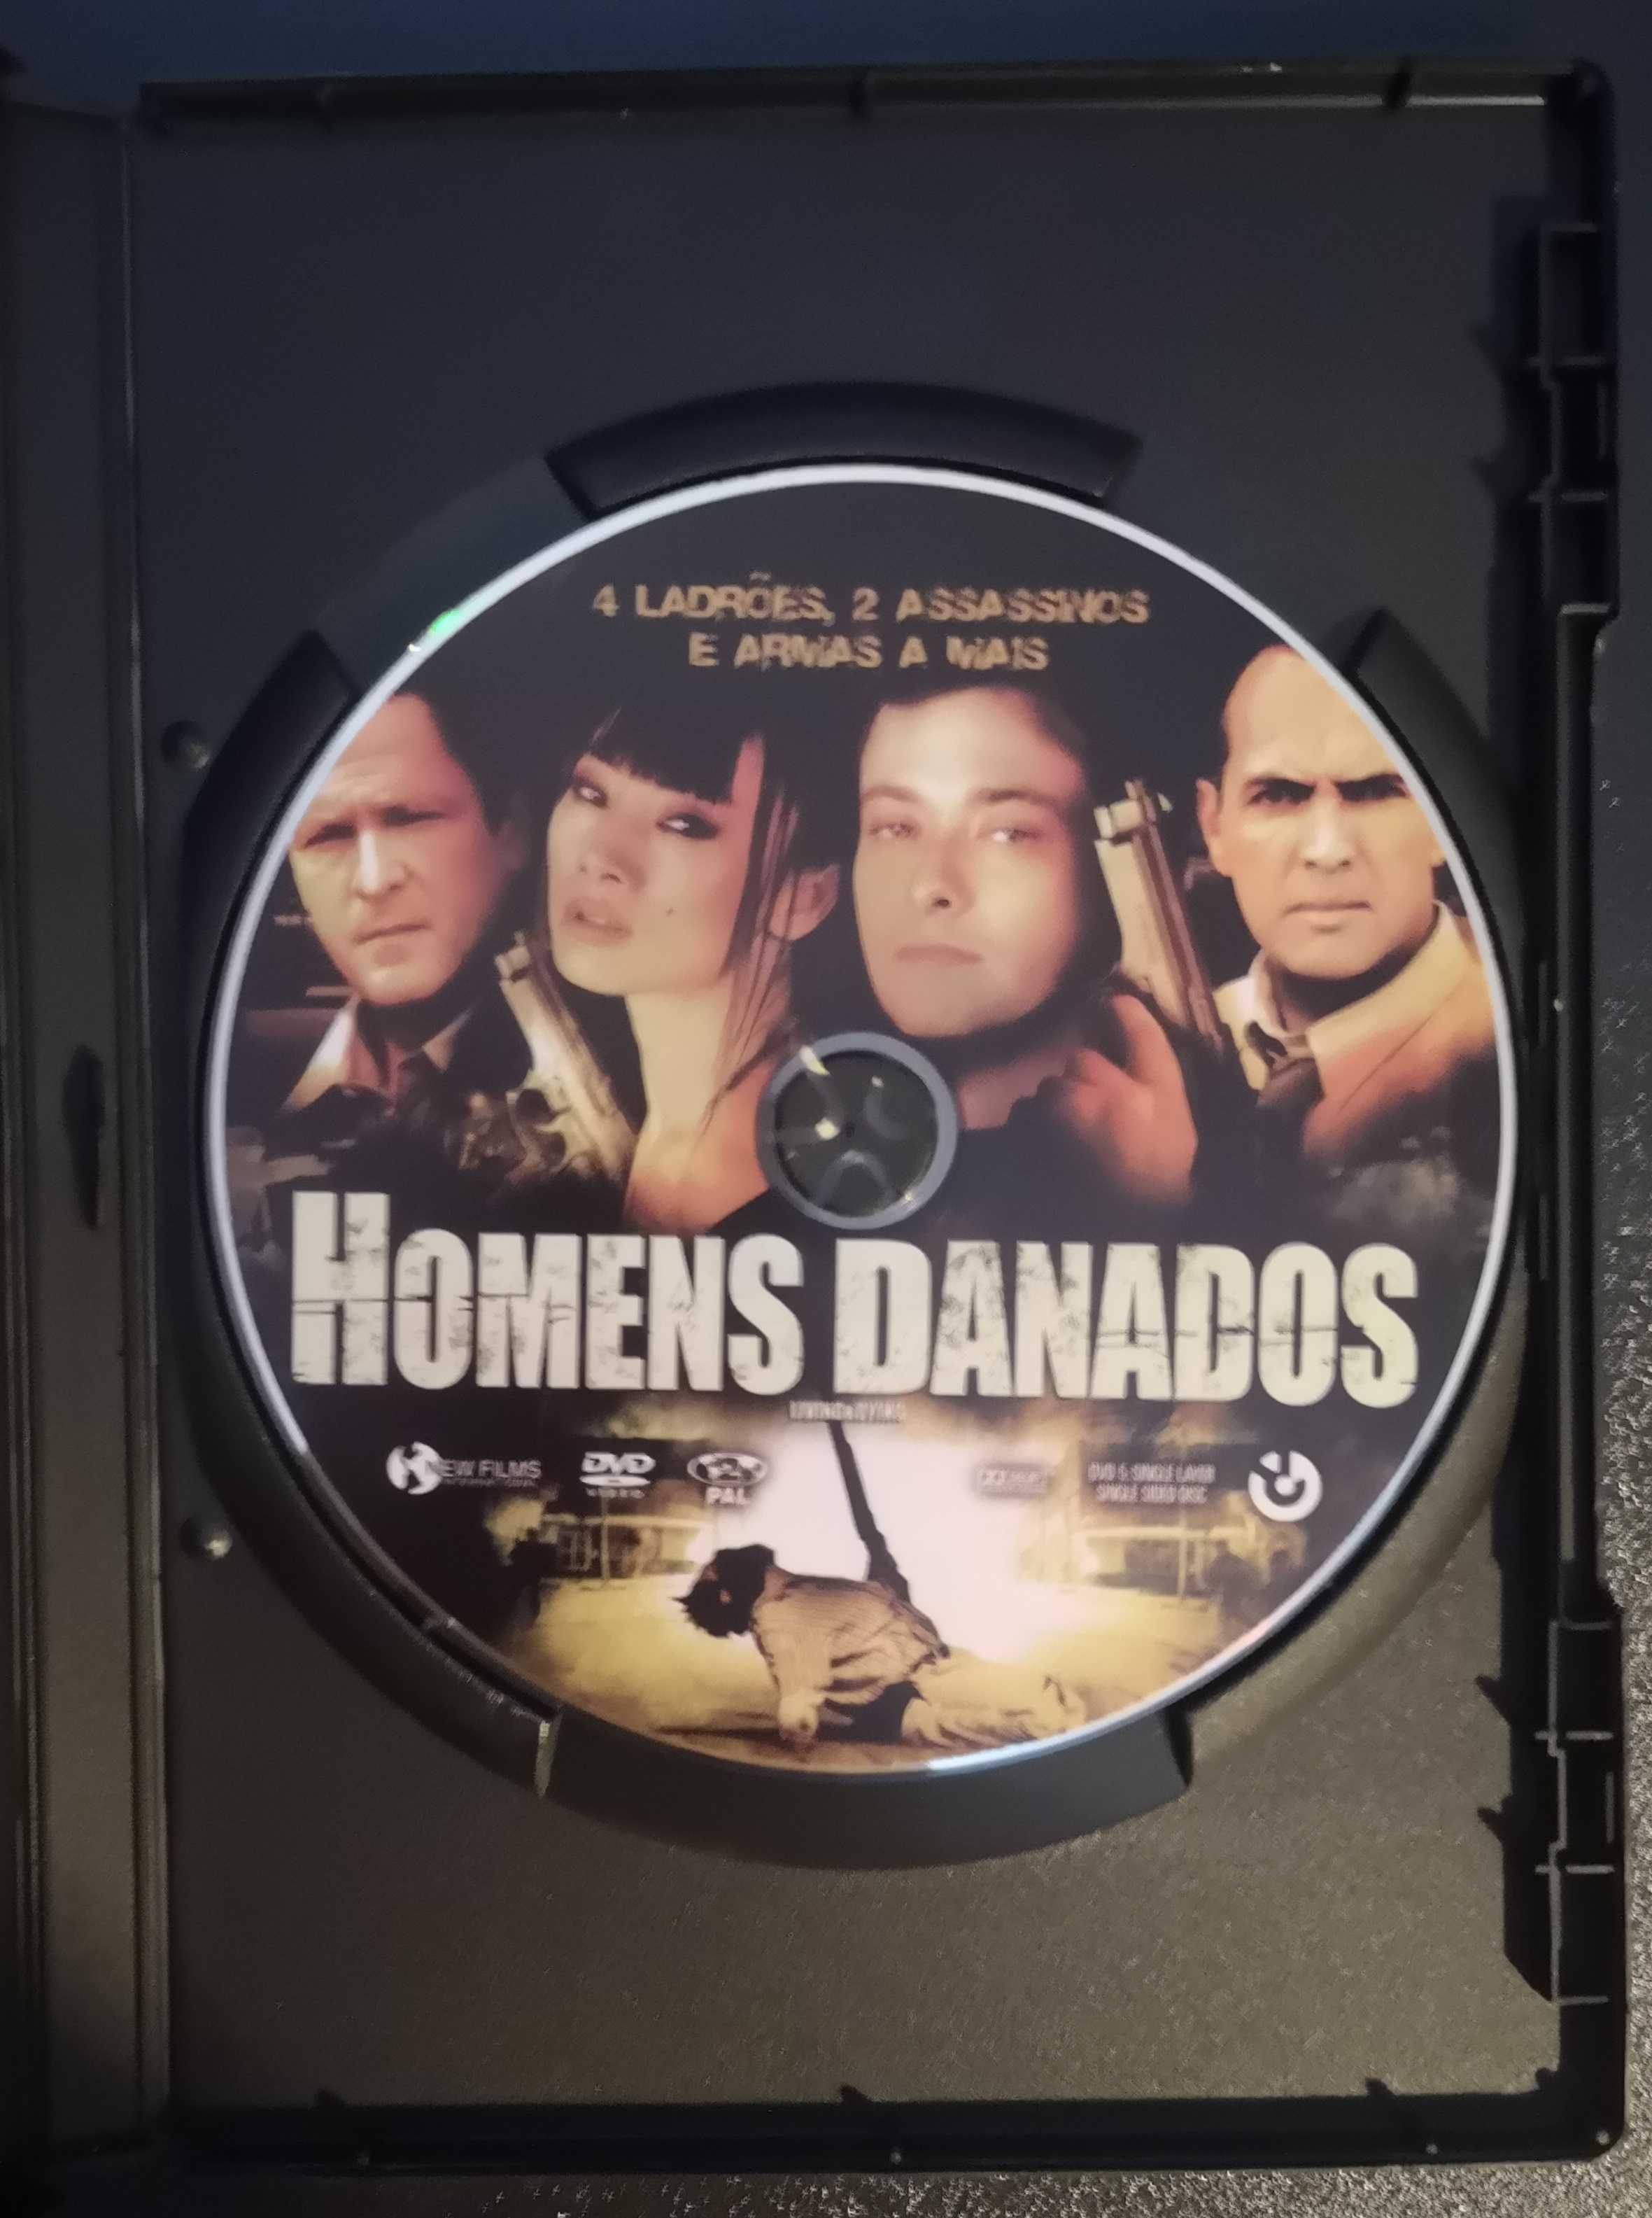 DVD "Homens Danados"